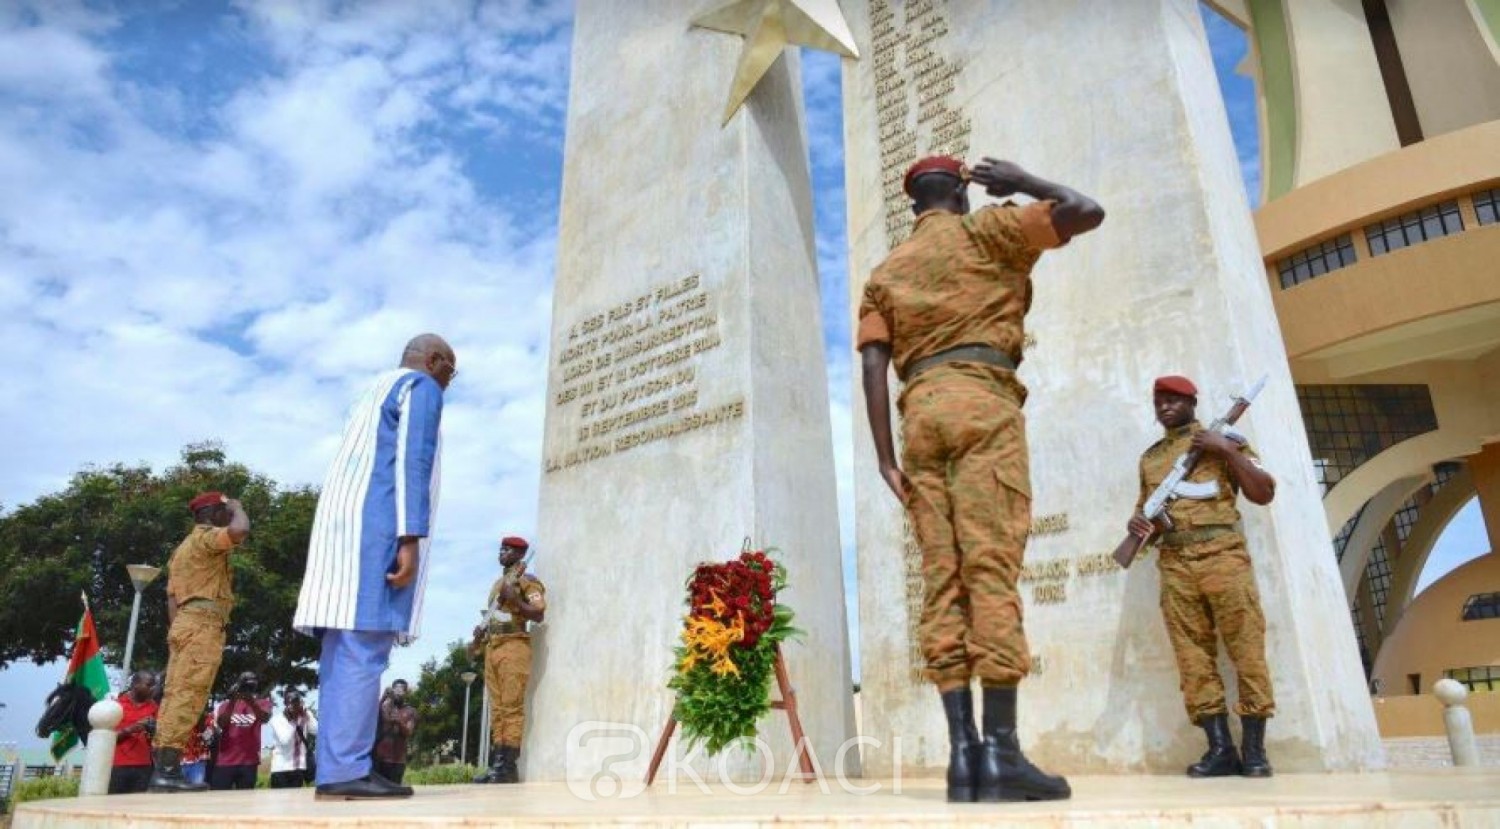 Burkina Faso: Commémoration du 5e anniversaire de l'insurrection populaire